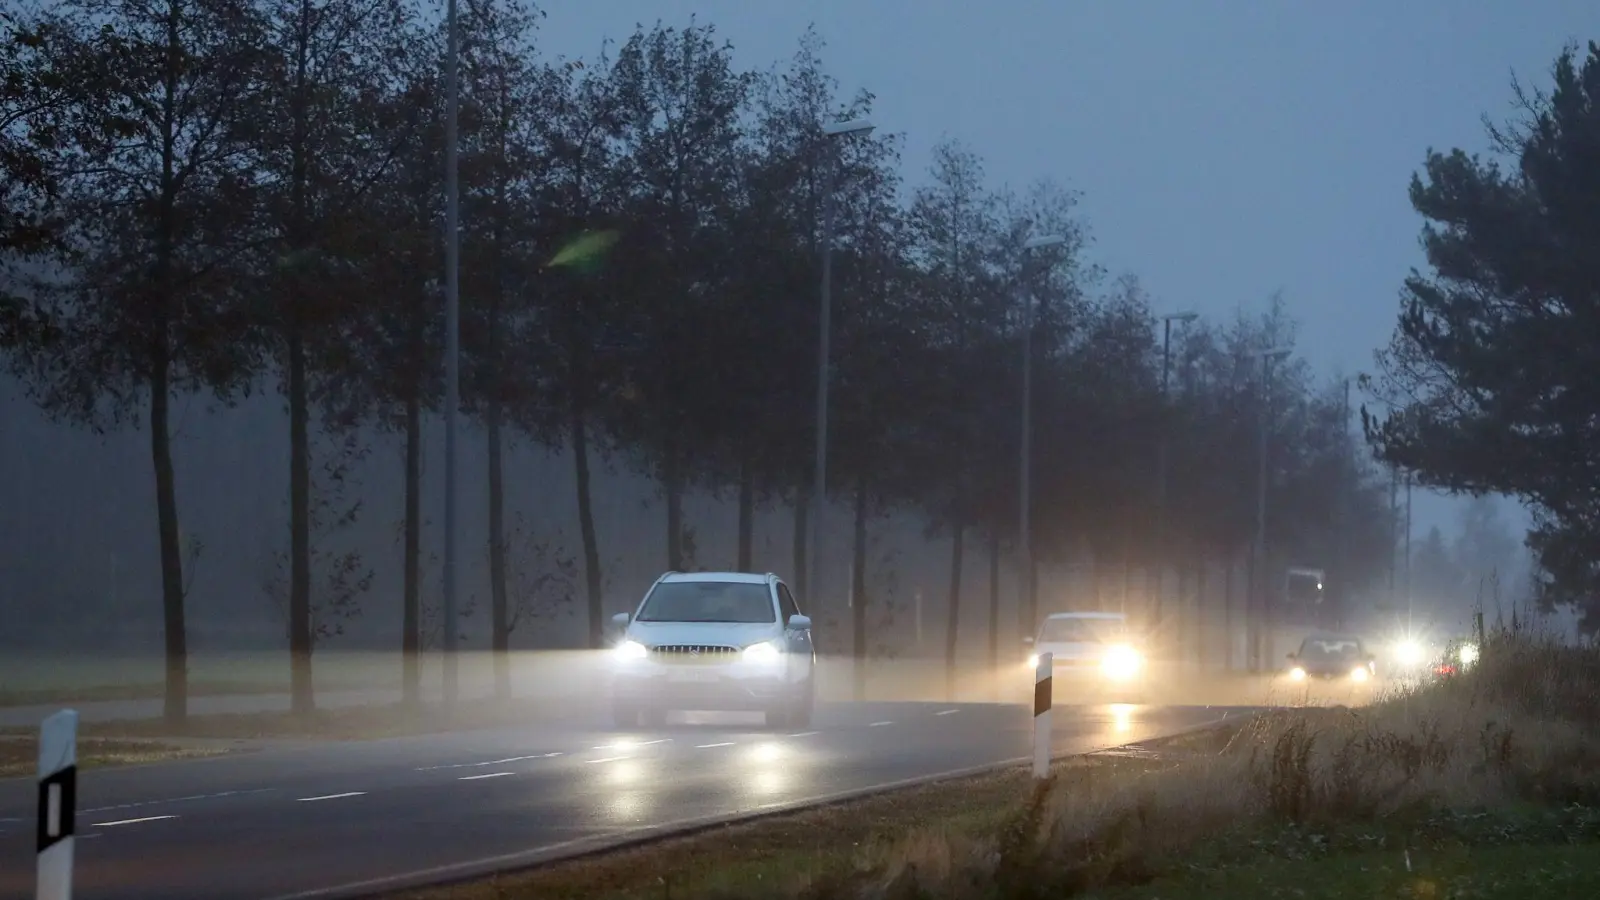 Kürzere Tage und herbstliches Wetter verschlechtern die Sicht beim Autofahren. Dann besonders wichtig: ausreichend Abstand halten. (Foto: Jan Woitas/dpa-Zentralbild/dpa-tmn)